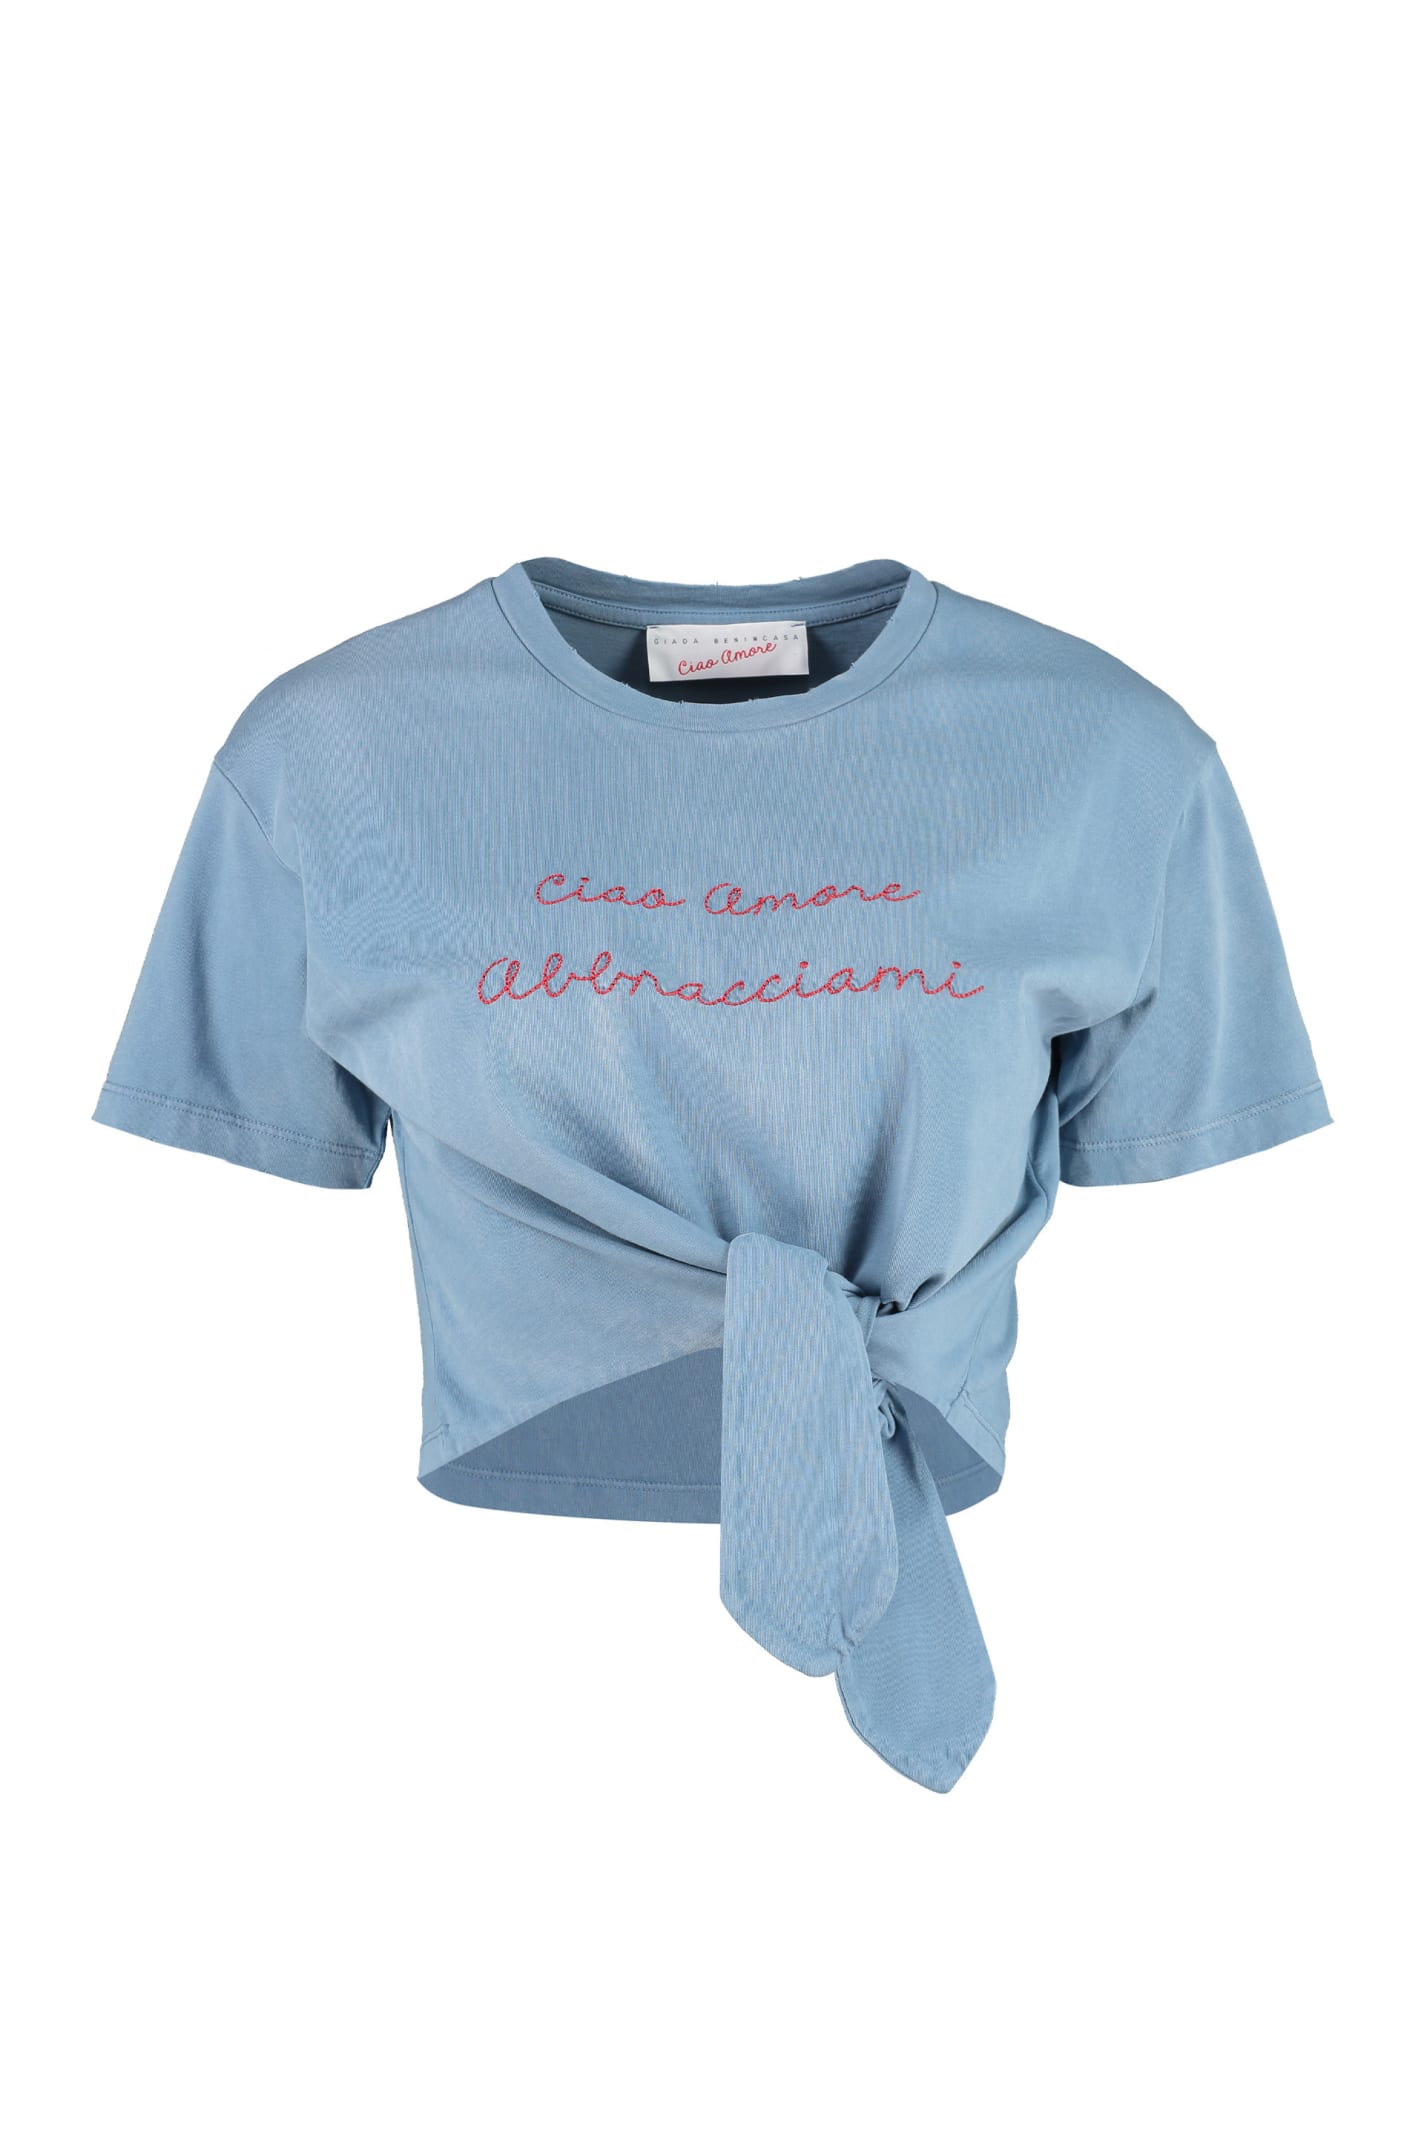 Giada Benincasa Cropped T-shirt